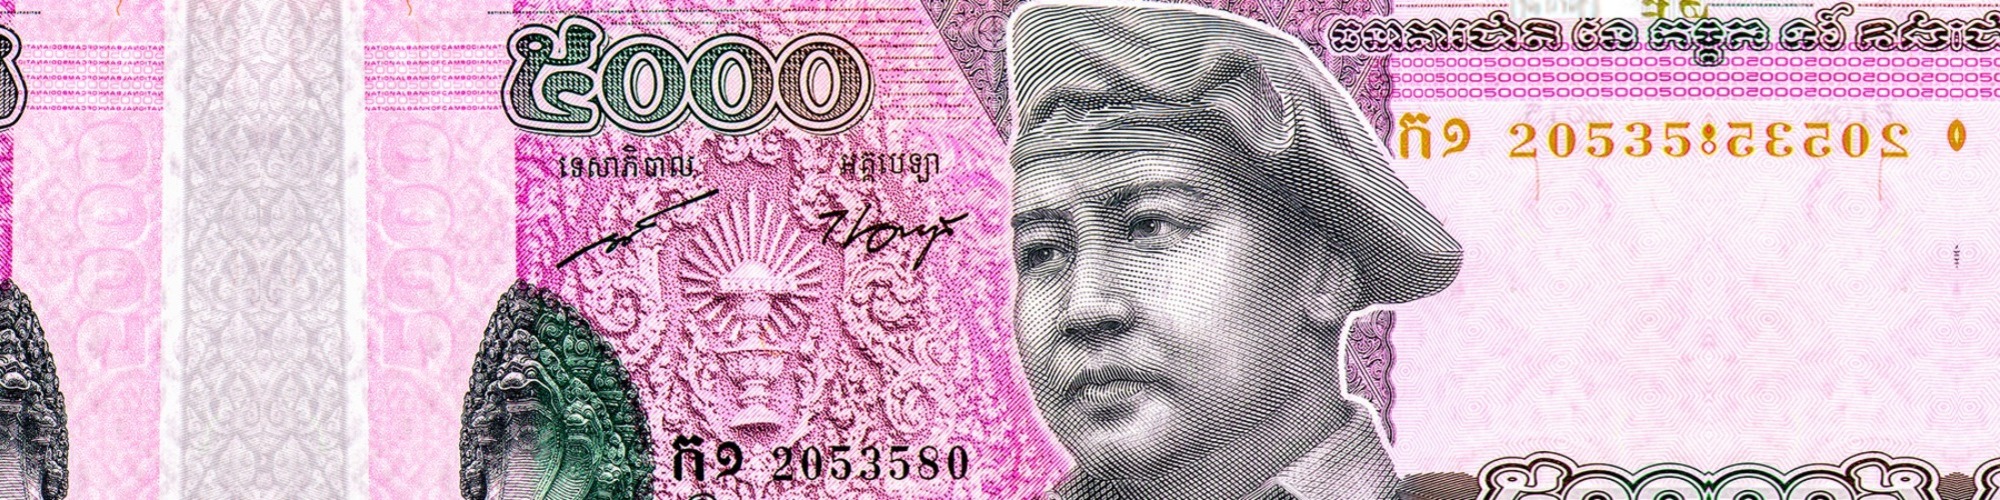 Norodom Sihanouk Banknote